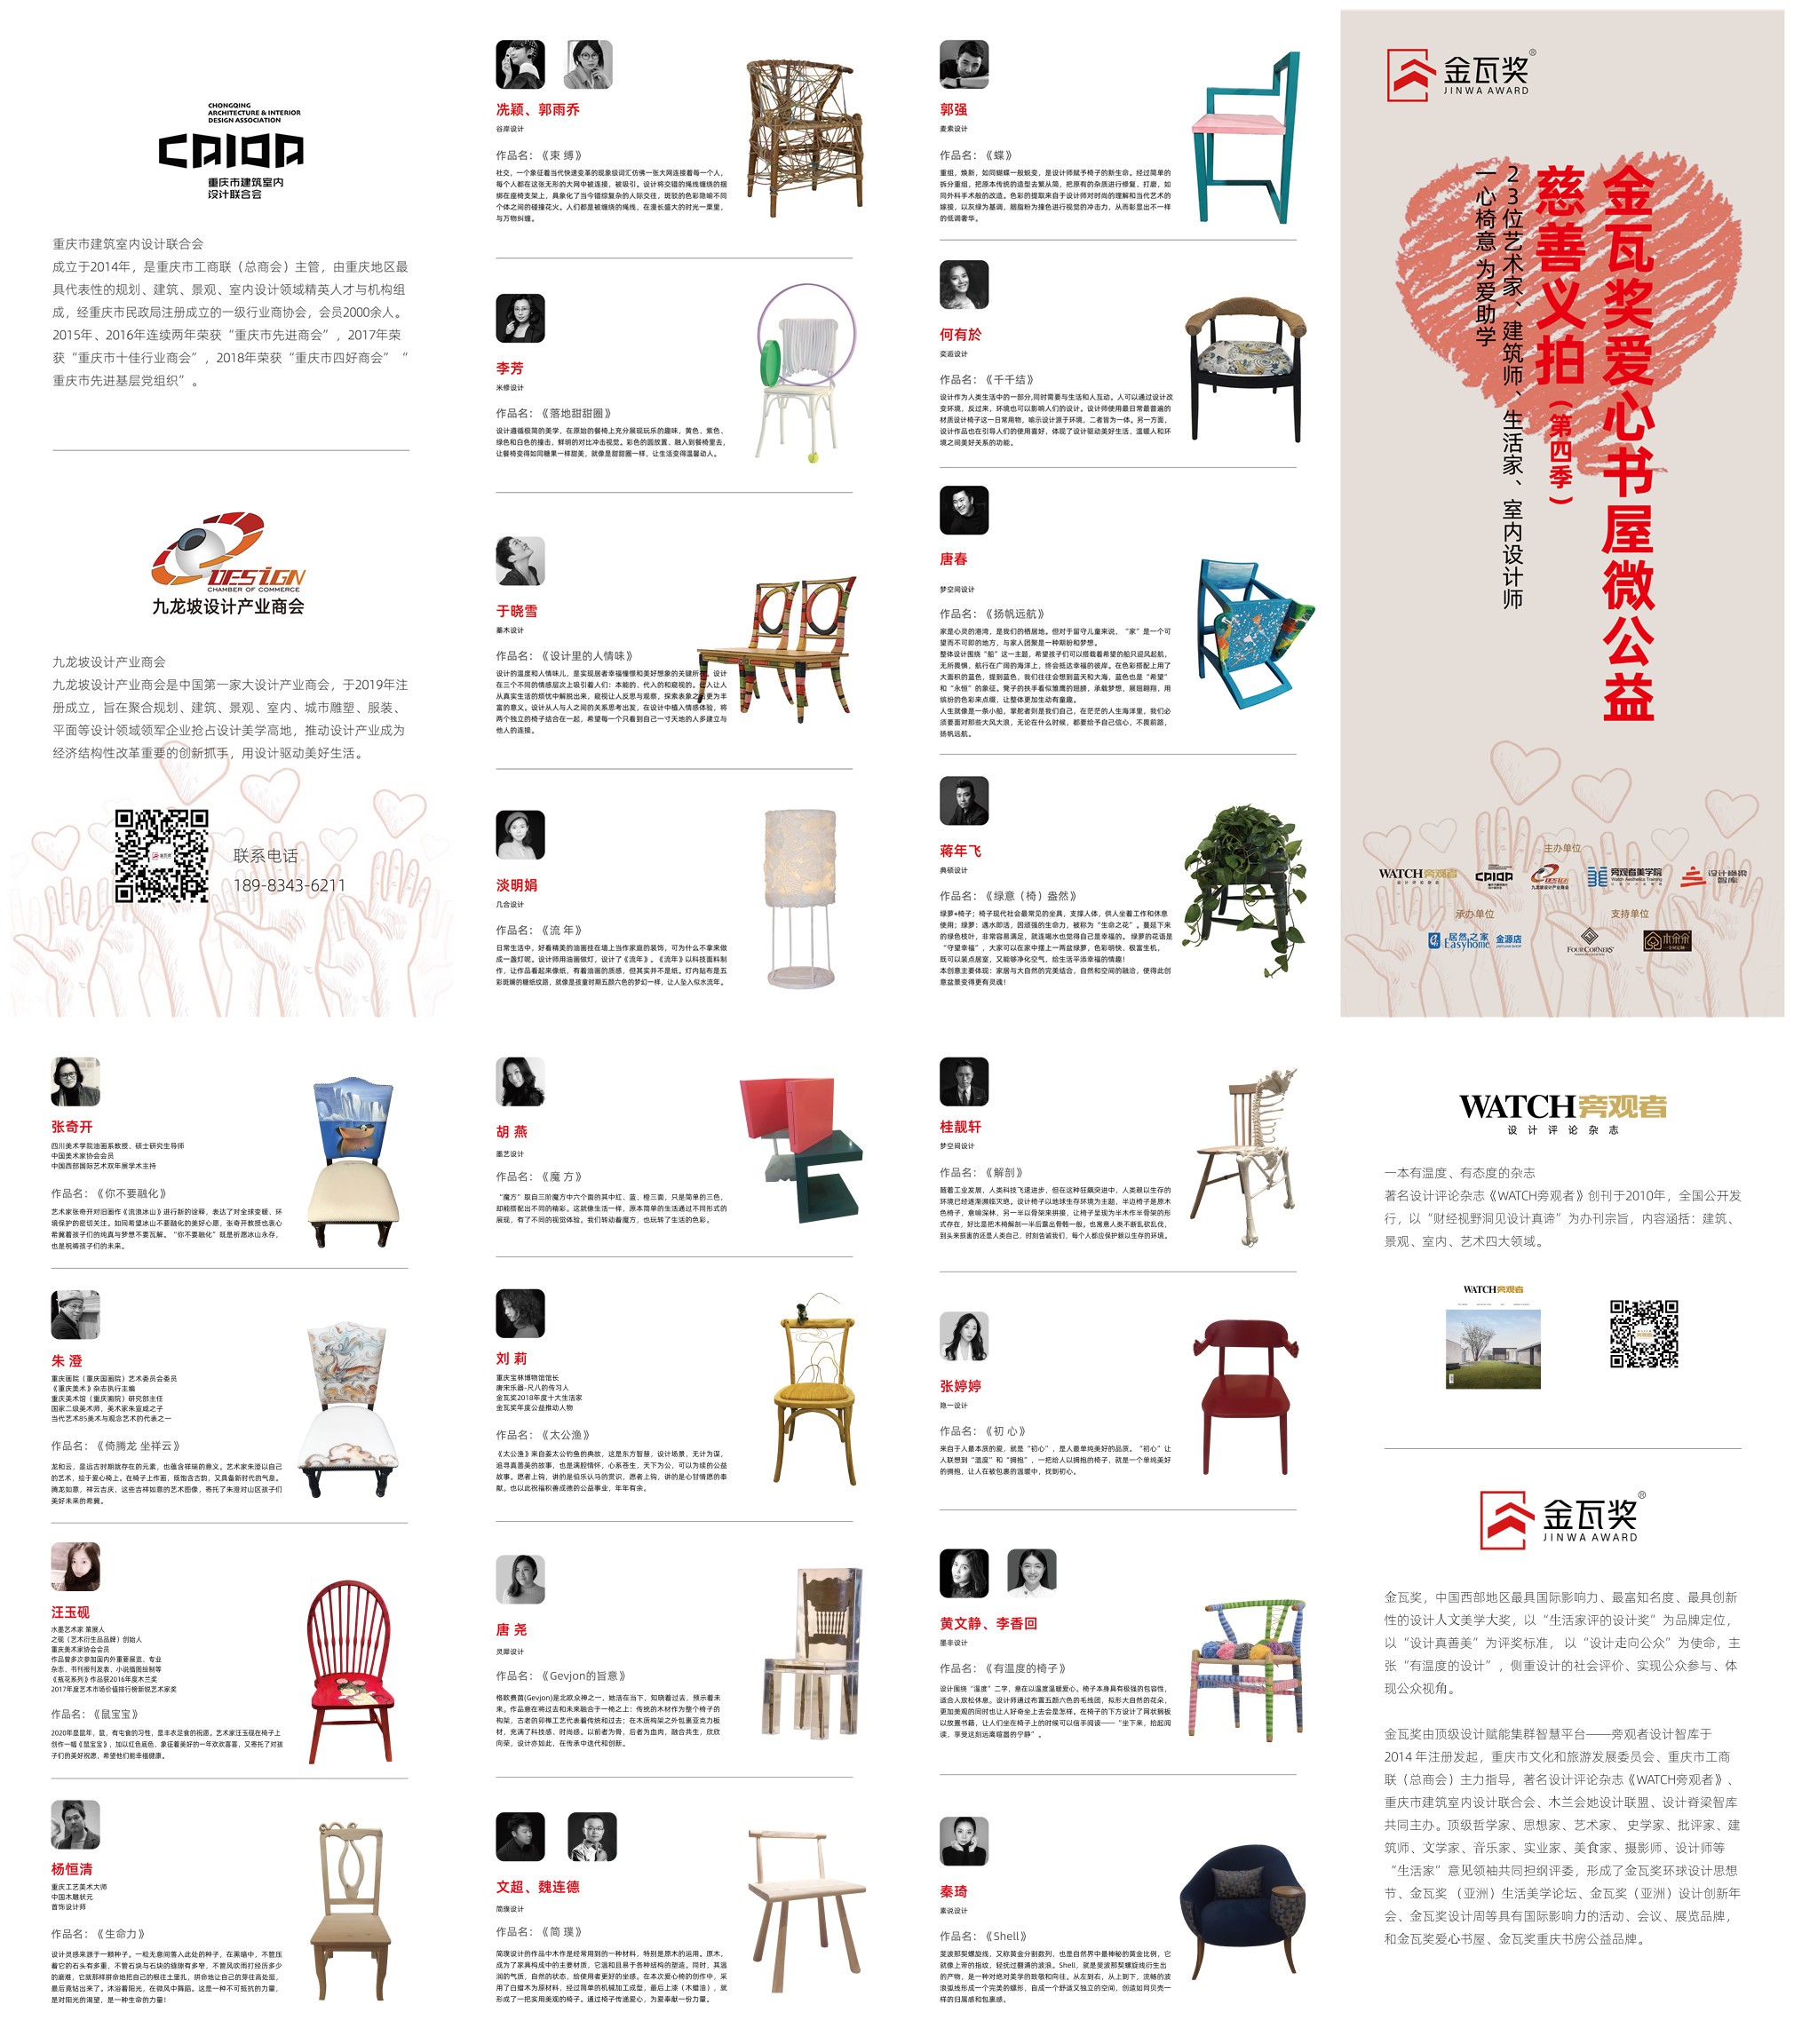 金瓦奖爱心书屋微公益（第四季） ：「发现美 · 传播爱」23位艺术家、生活家、设计师温暖创作